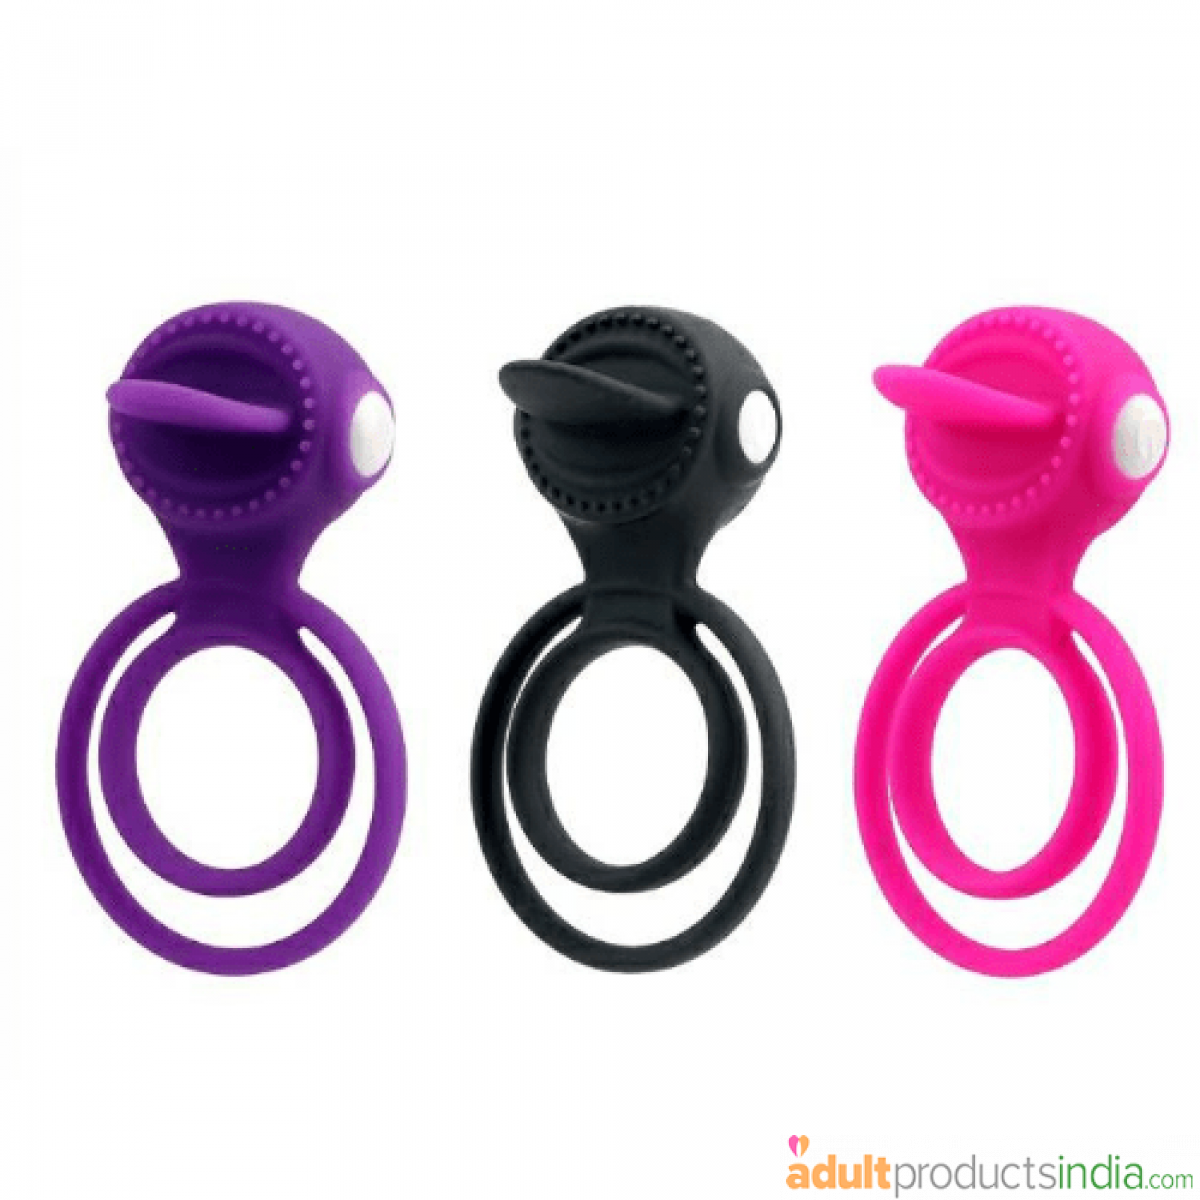 Clitoral Stimulating Penis Ring - Multi color